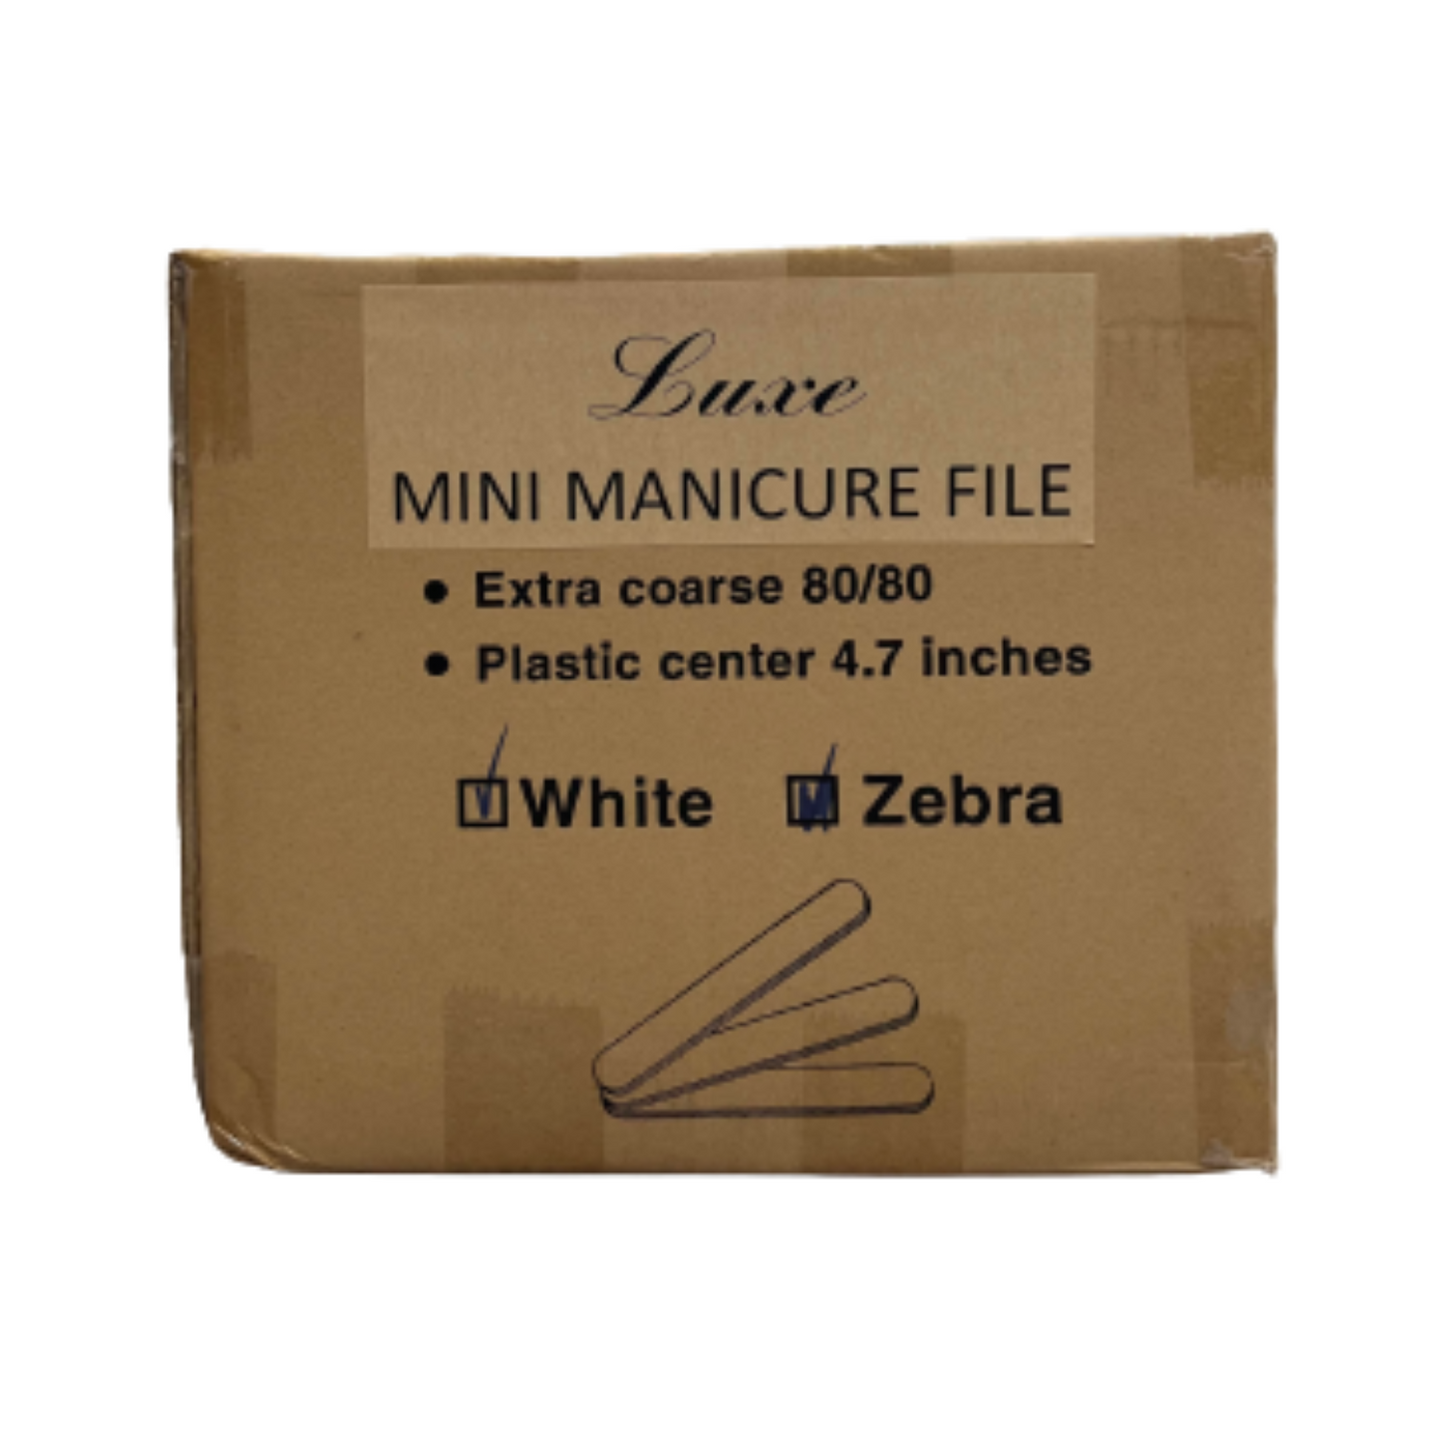 Luxe White Zebra X-Coarse Mini Manicure 80/80 File (100 packs)